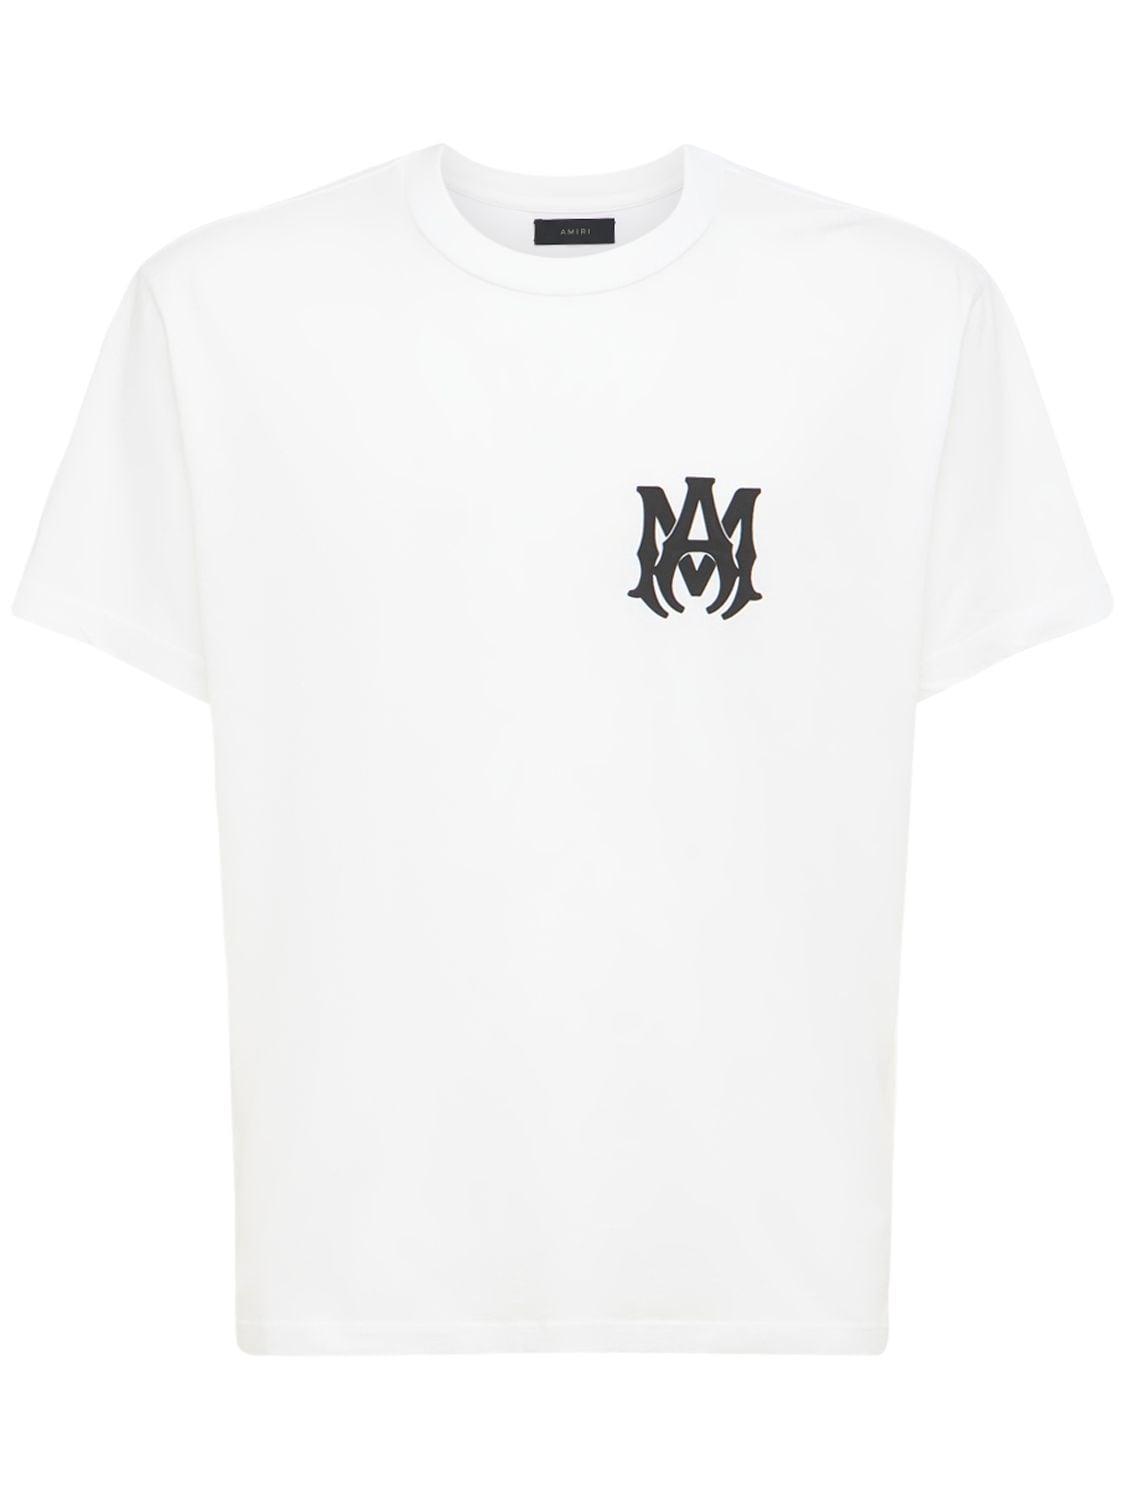 Image of Ma Cotton Jersey T-shirt